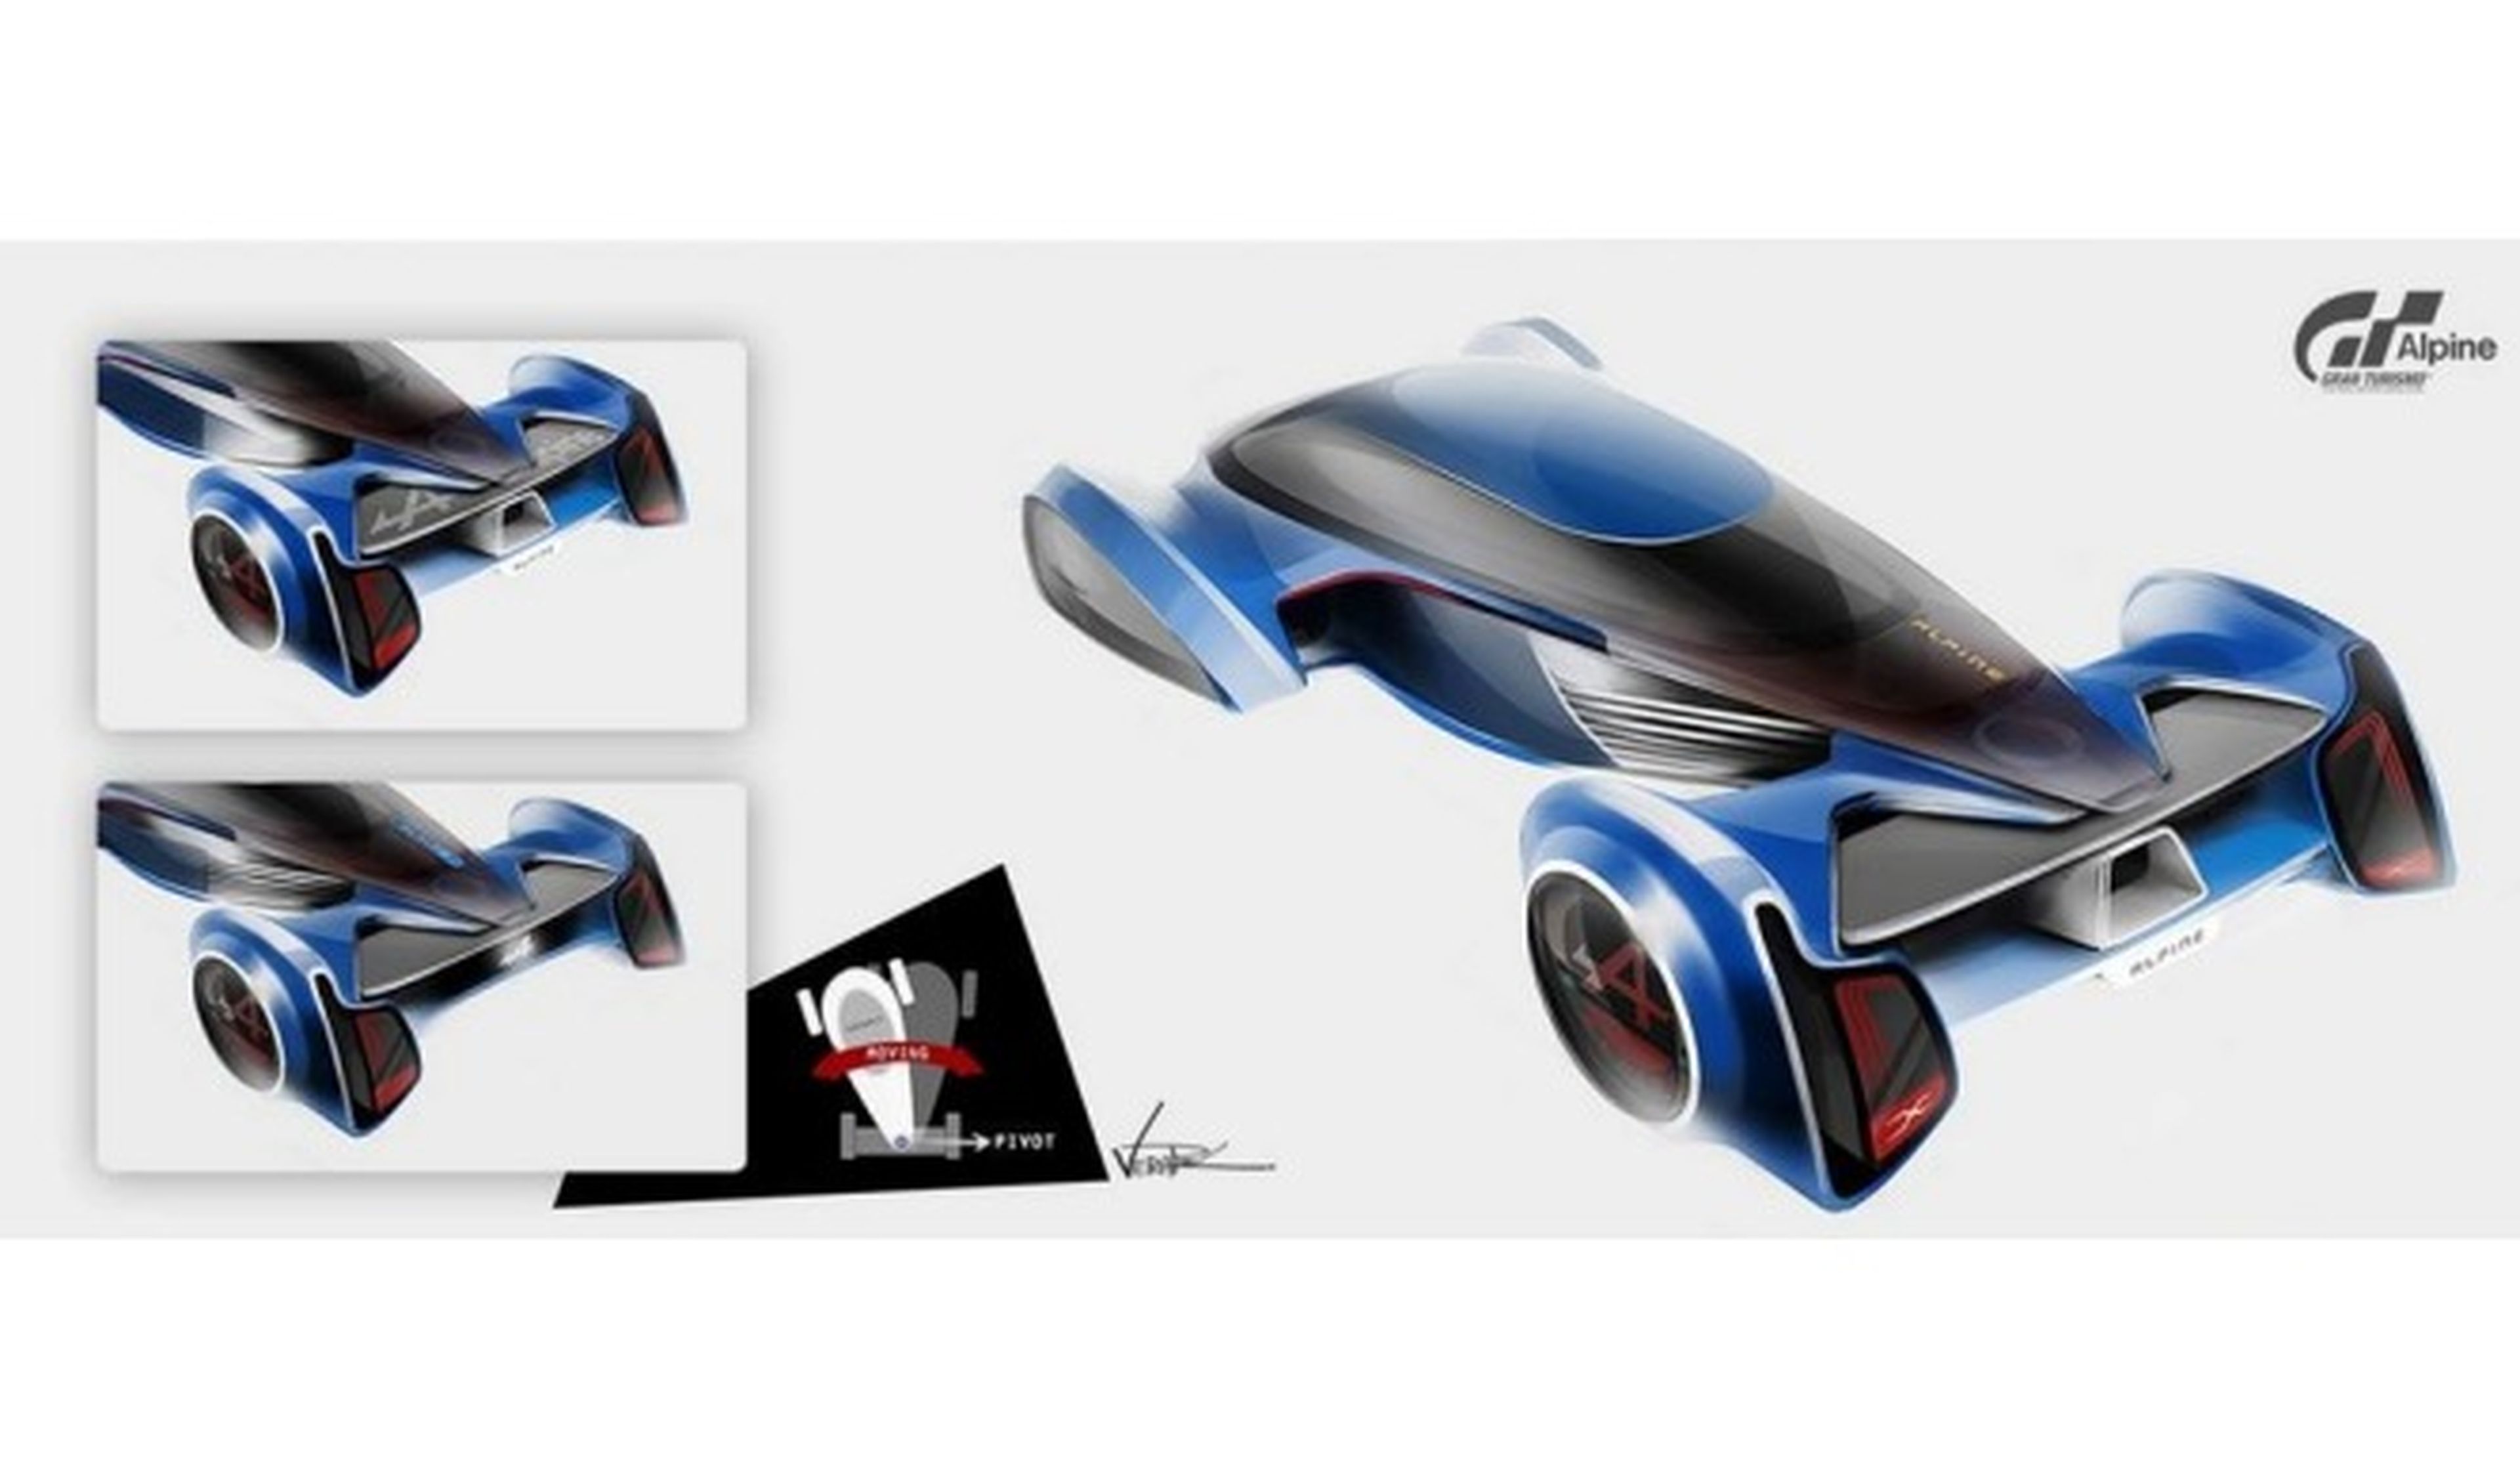 Desvelado el teaser del Alpine VisionGT concept, para GT 6